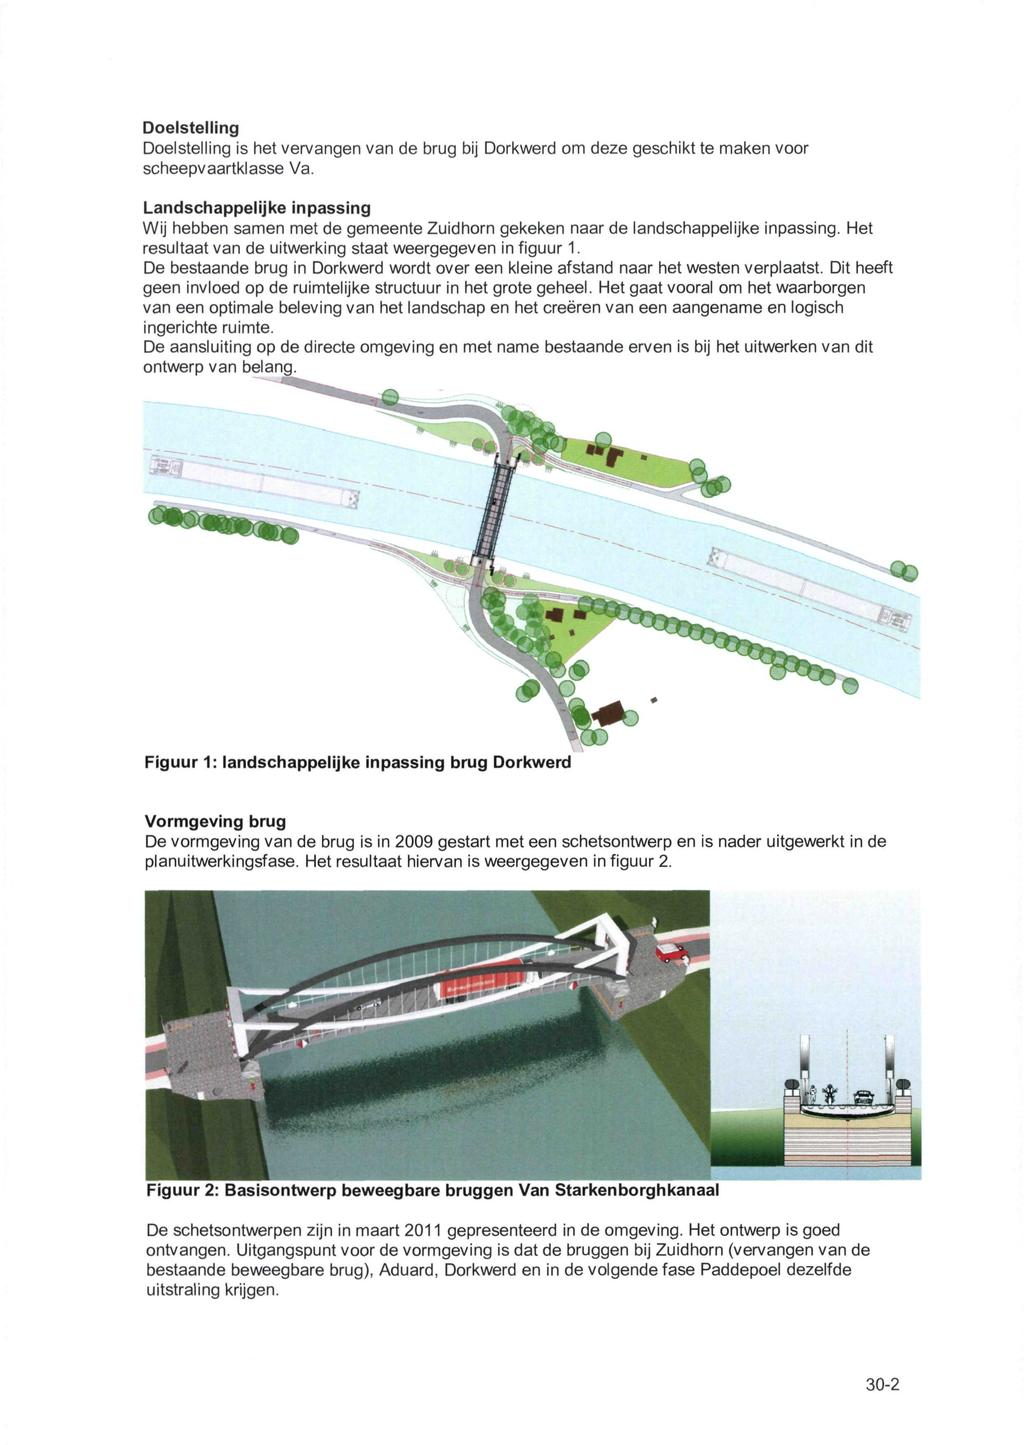 Doelstelling Doelstelling is het vervangen van de brug bij Dorkwerd om deze geschikt te maken voor scheepvaartklasse Va.